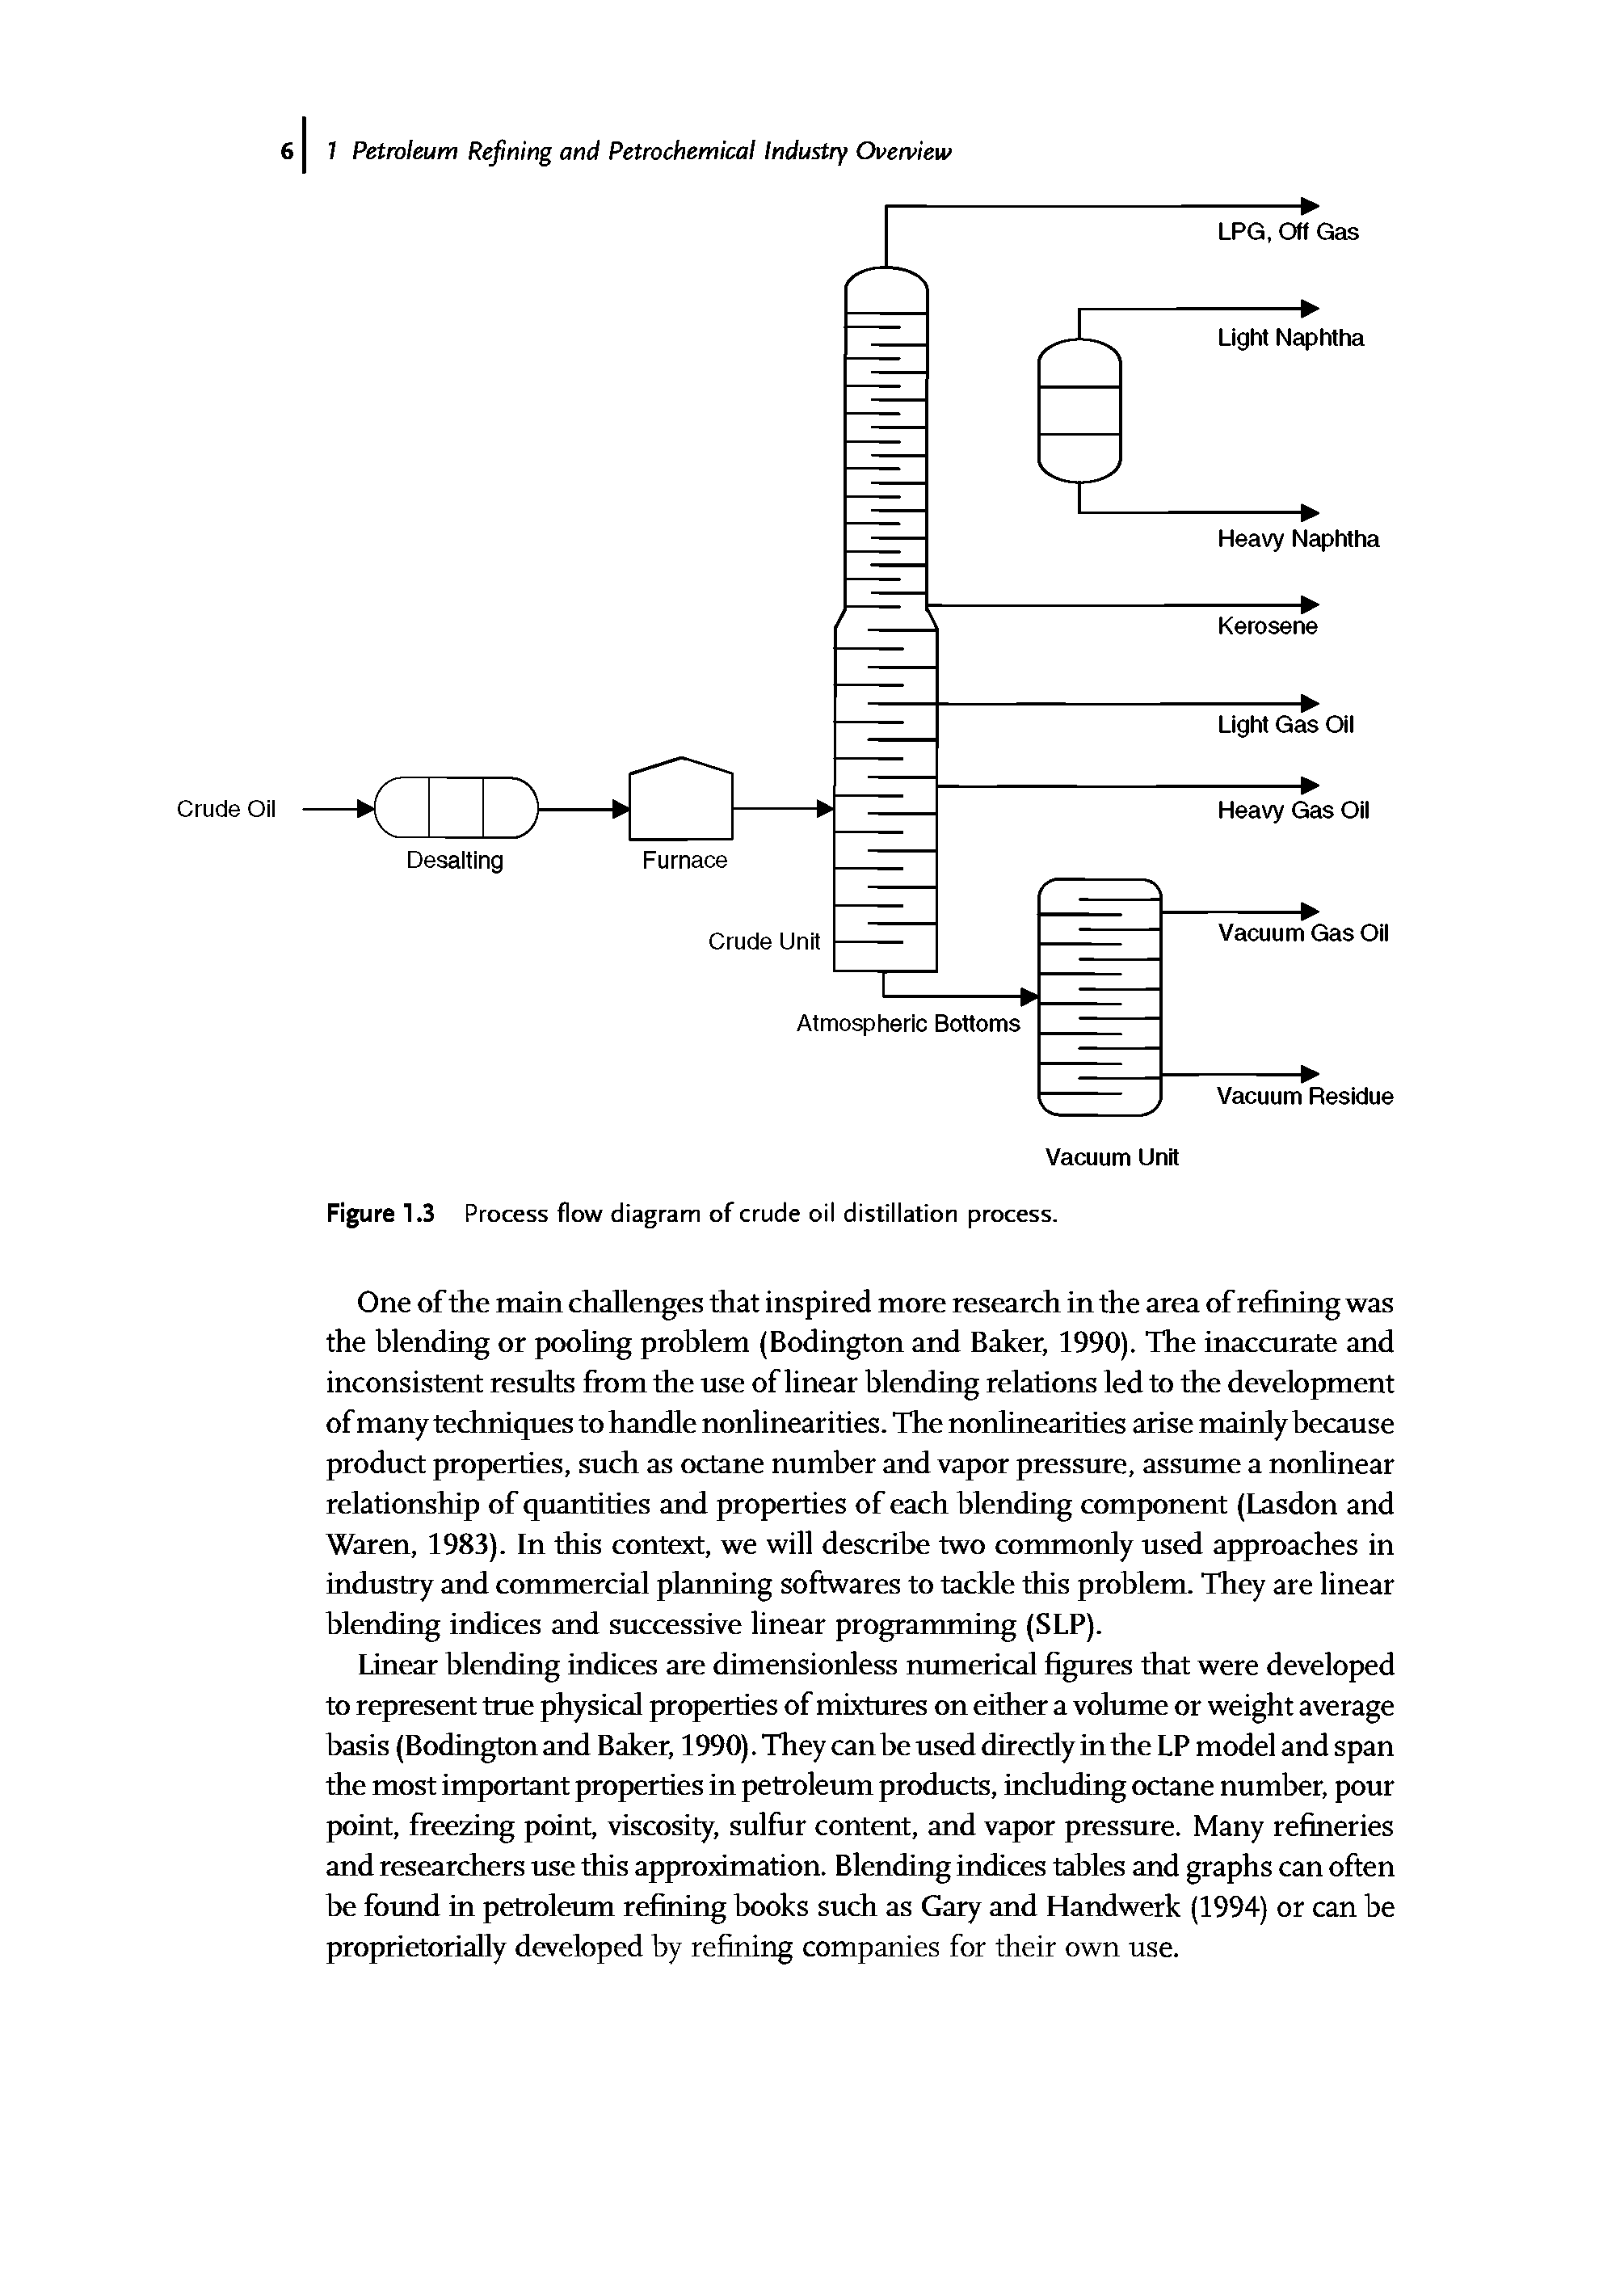 Figure 1.3 Process flow diagram of crude oil distillation process.